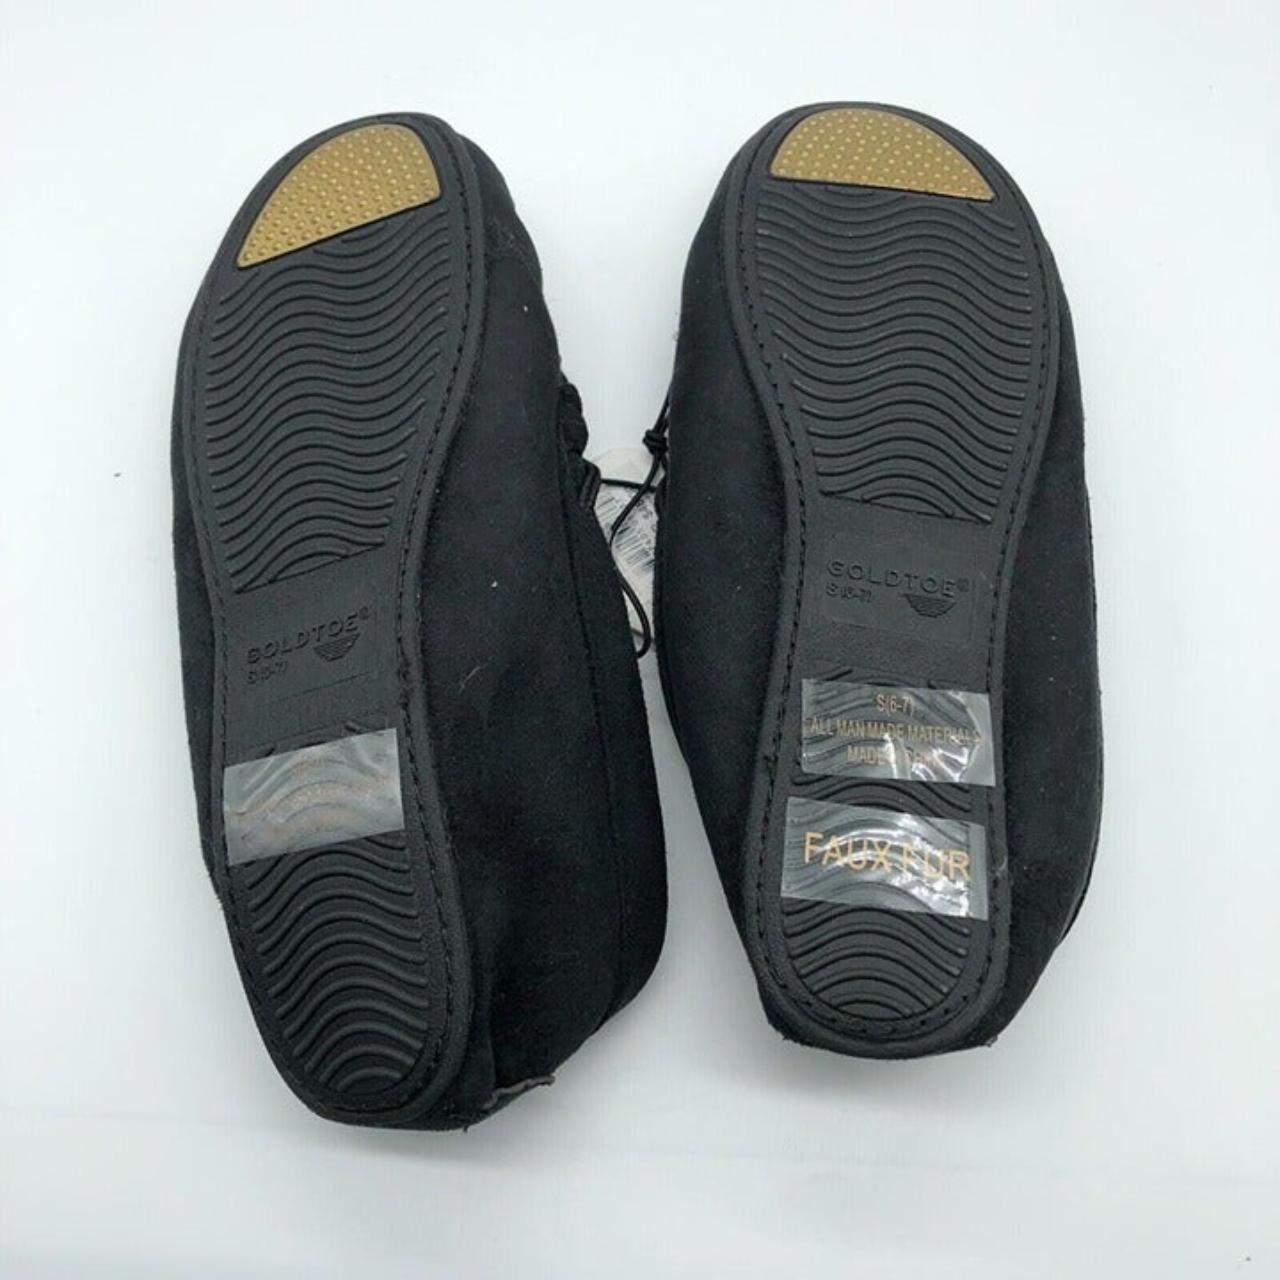 Gold Toe Women's Black Slippers (4)